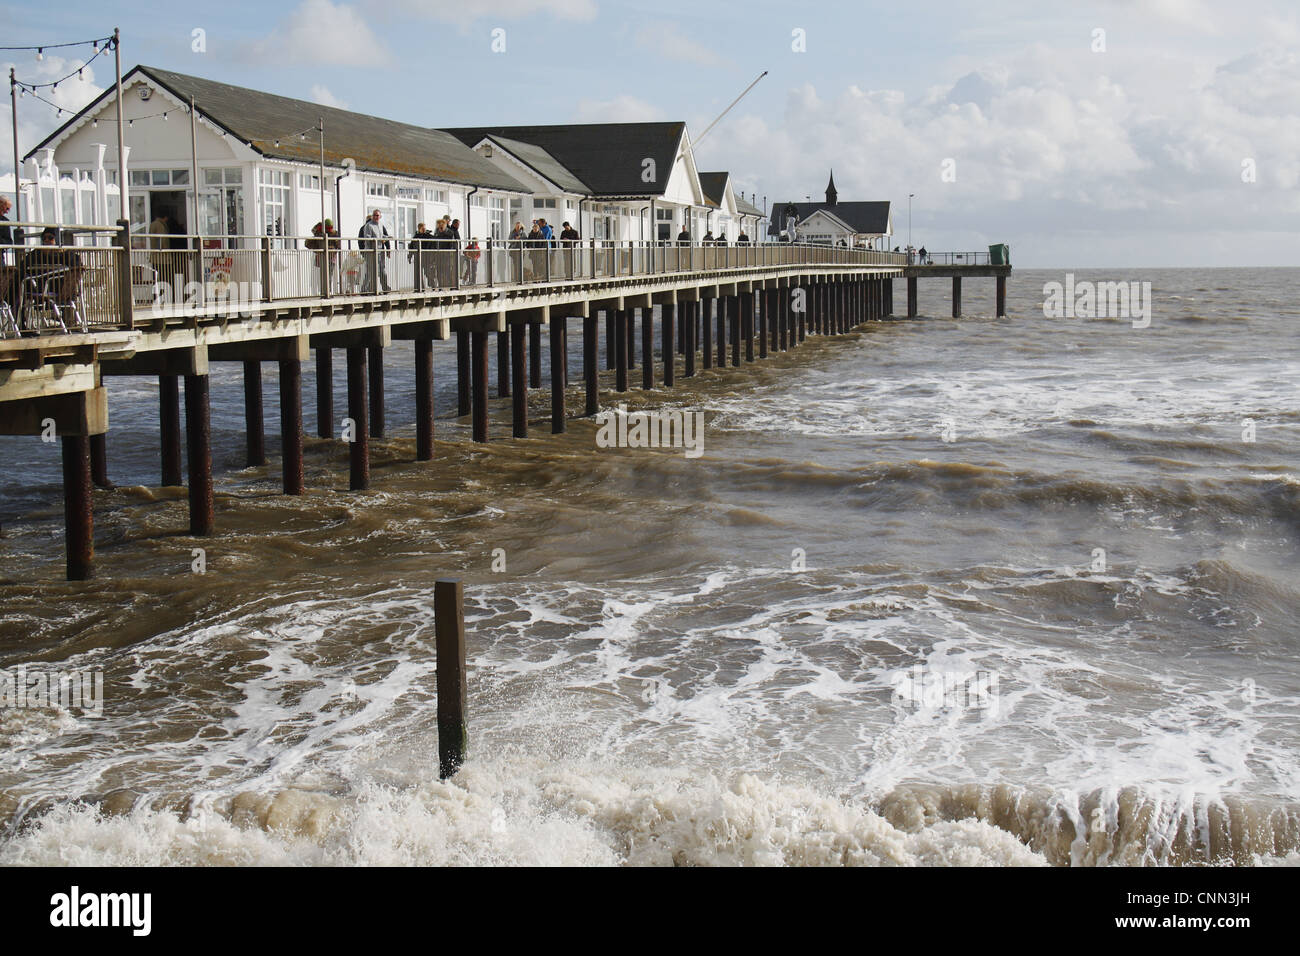 Avis de Pier restauré avec mer agitée, Southwold Pier, Southwold, Suffolk, Angleterre, octobre Banque D'Images